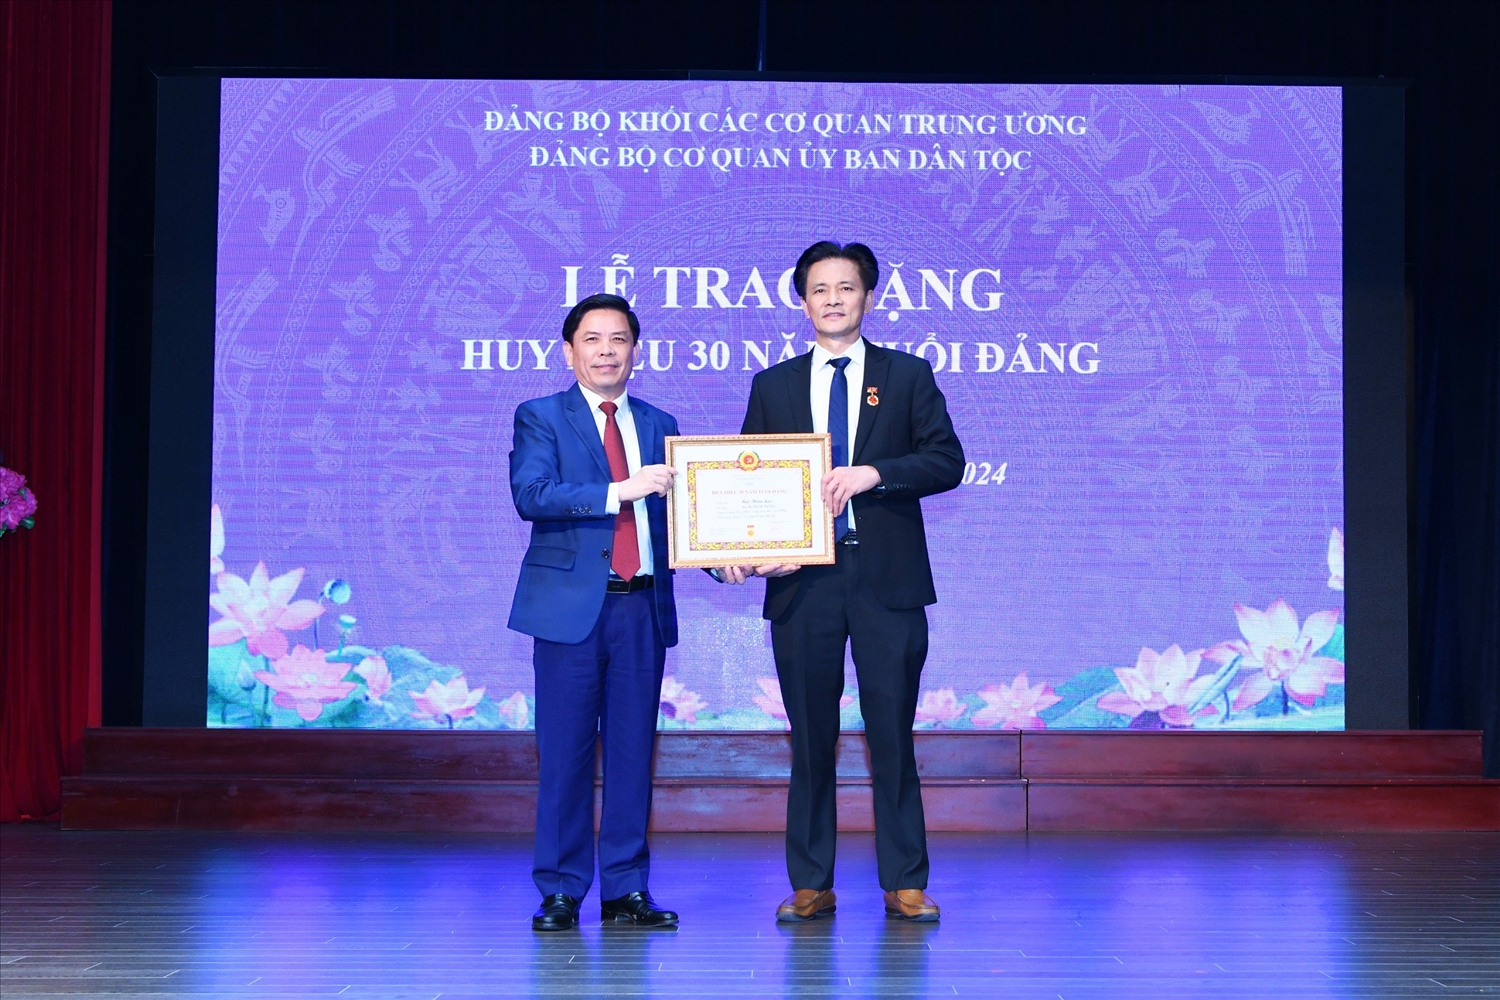 Bí thư Đảng ủy Khối các cơ quan Trung ương Nguyễn Văn Thể trao tặng Huy hiệu 30 năm tuổi Đảng cho Giám đốc Nhà khách Dân tộc Bùi Thiện Lạc